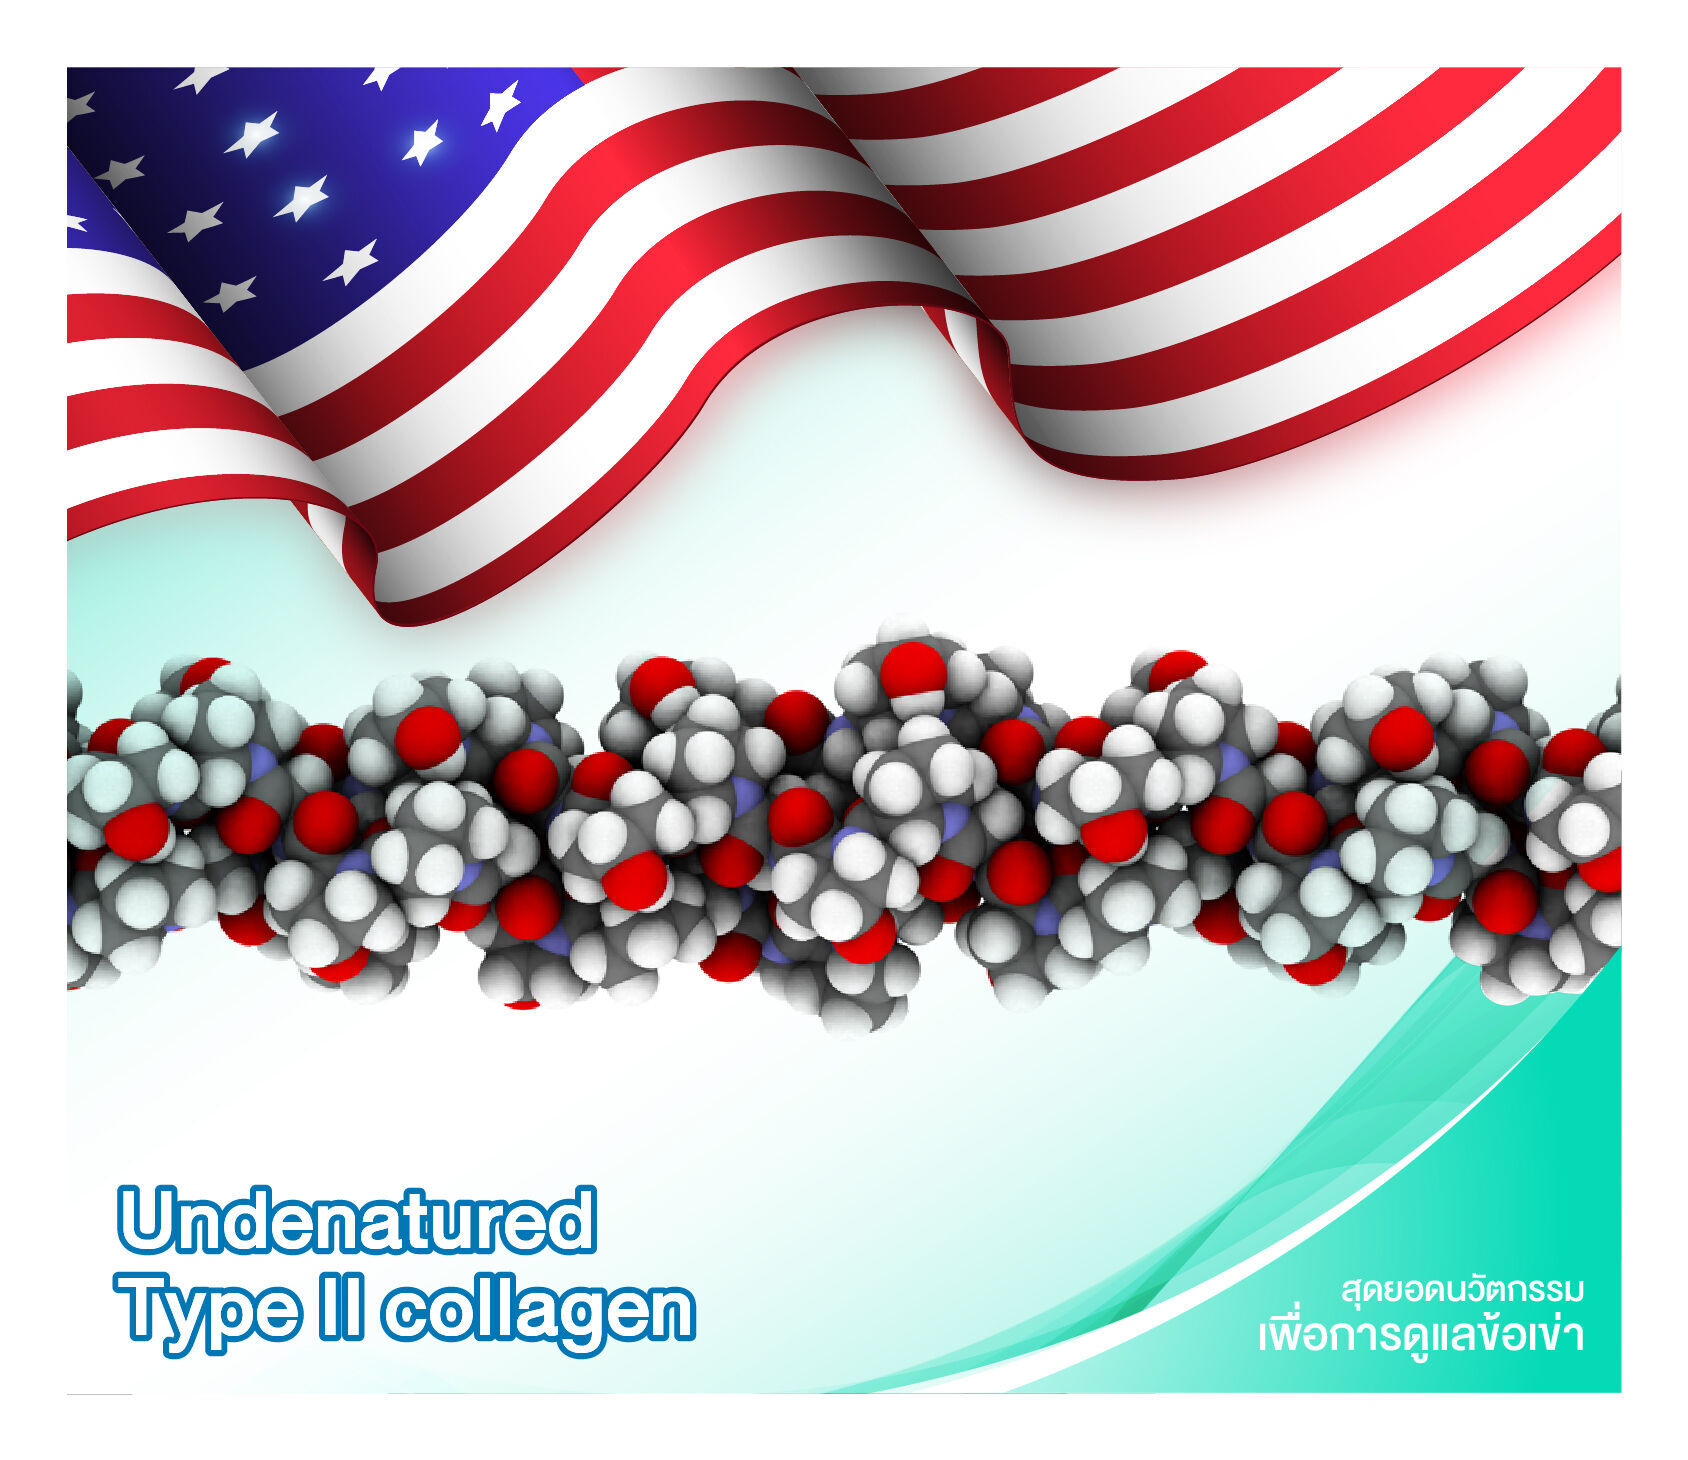 สารตั้งต้นนำเข้าจาก U.S.A Undenatured Collagen Type II (UC-II) เรียกสั้นๆ ว่า “ยูซีทู” คือคอลลาเจนชนิดที่ 2 ที่ผลิตด้วยอุณหภูมิต่ำและไม่ใช้เอนไซม์ในการผลิต จึงทำให้ได้โครงสร้างแบบ Undenatured 